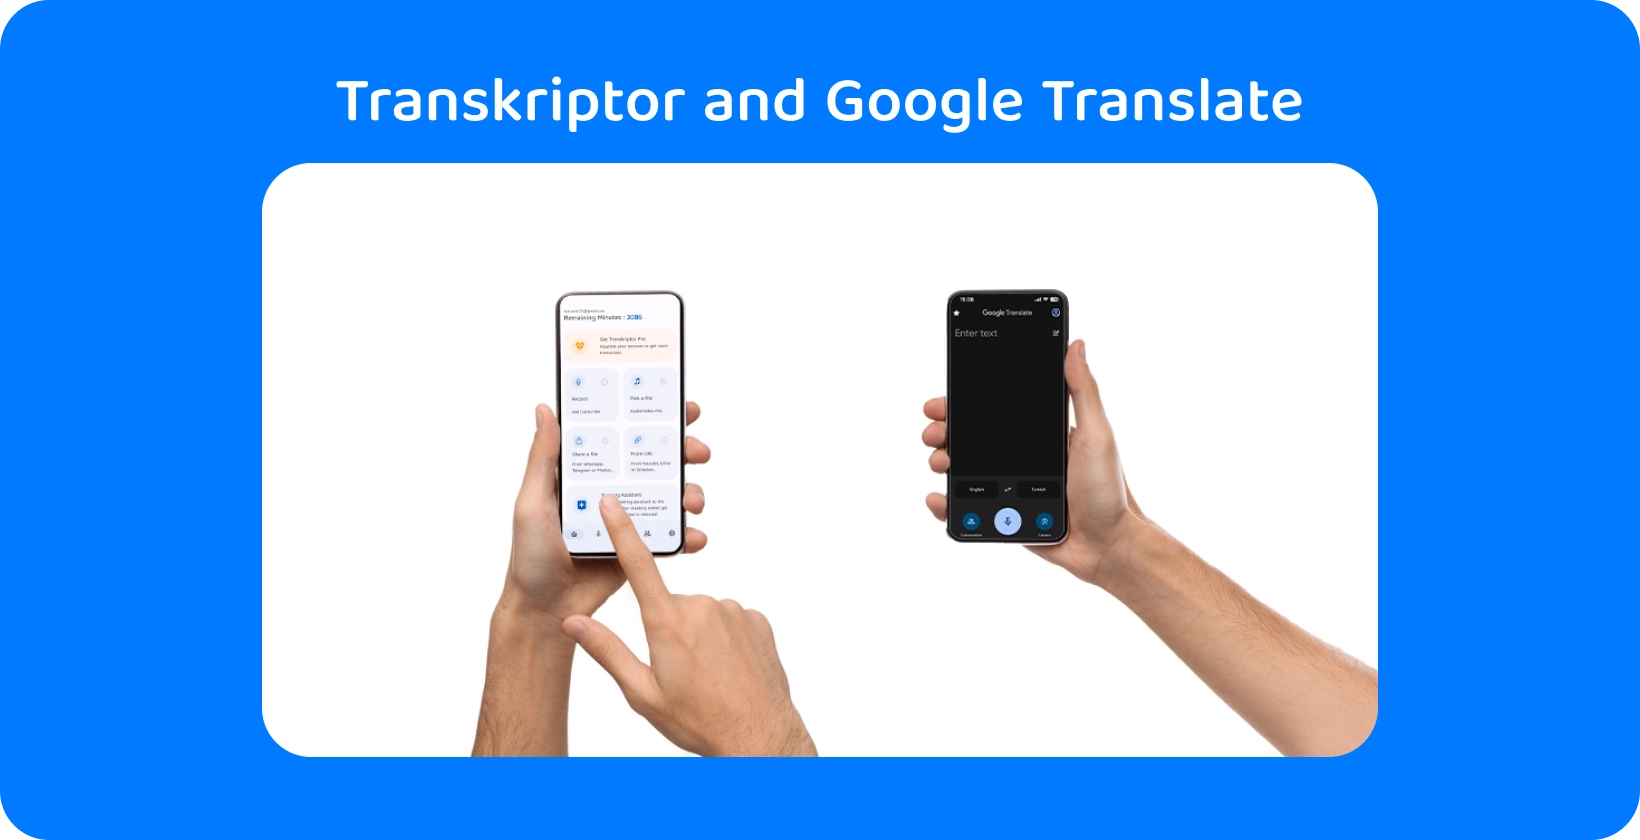 Twee handen die smartphones met Transkriptor en Google Translate houden, demonstreren audiotranscriptie en vertaling.